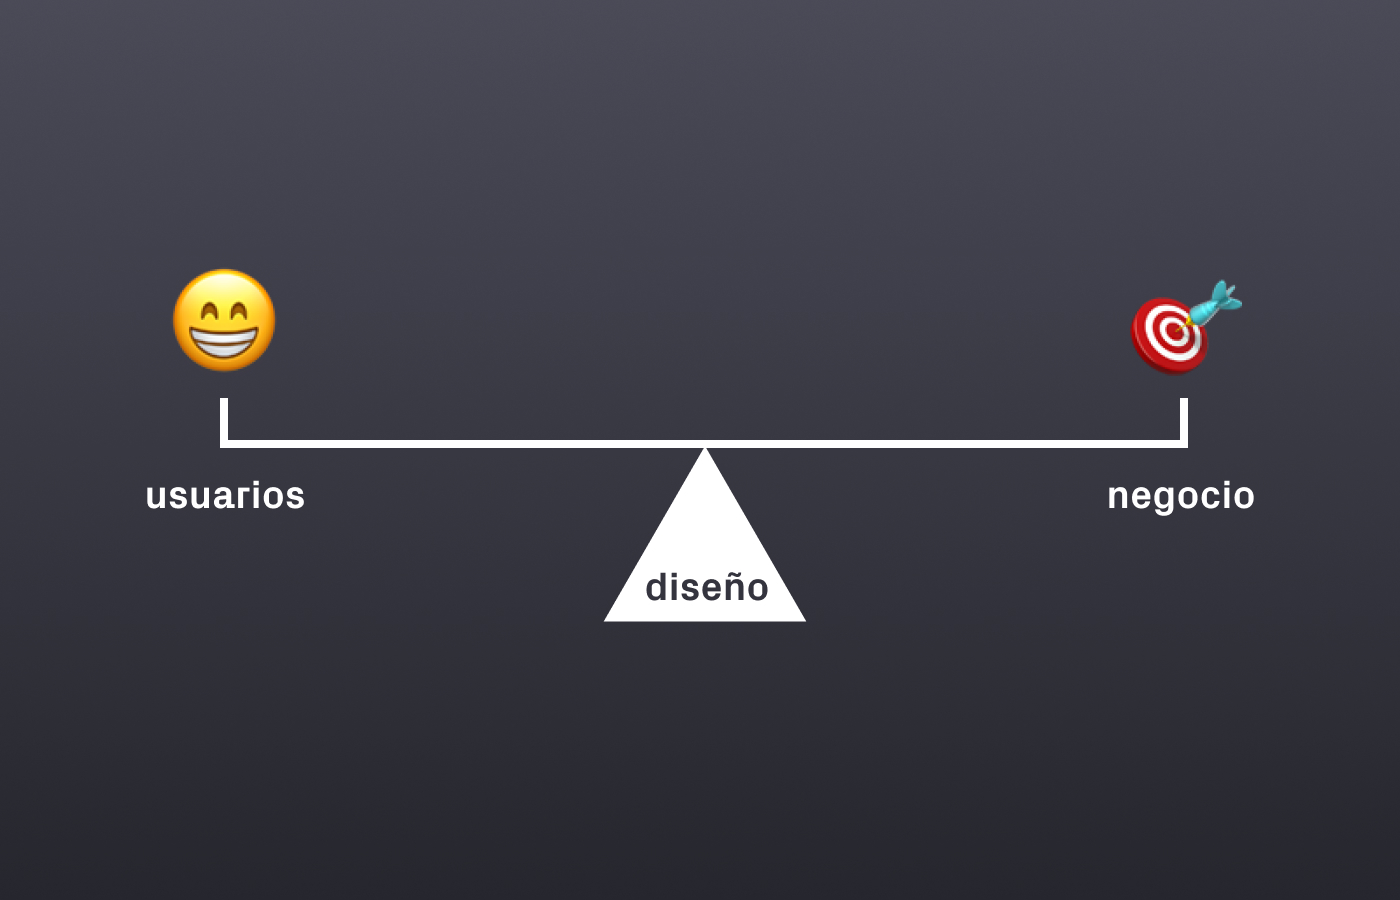 Diseño: equilibrio entre usuarios y negocio